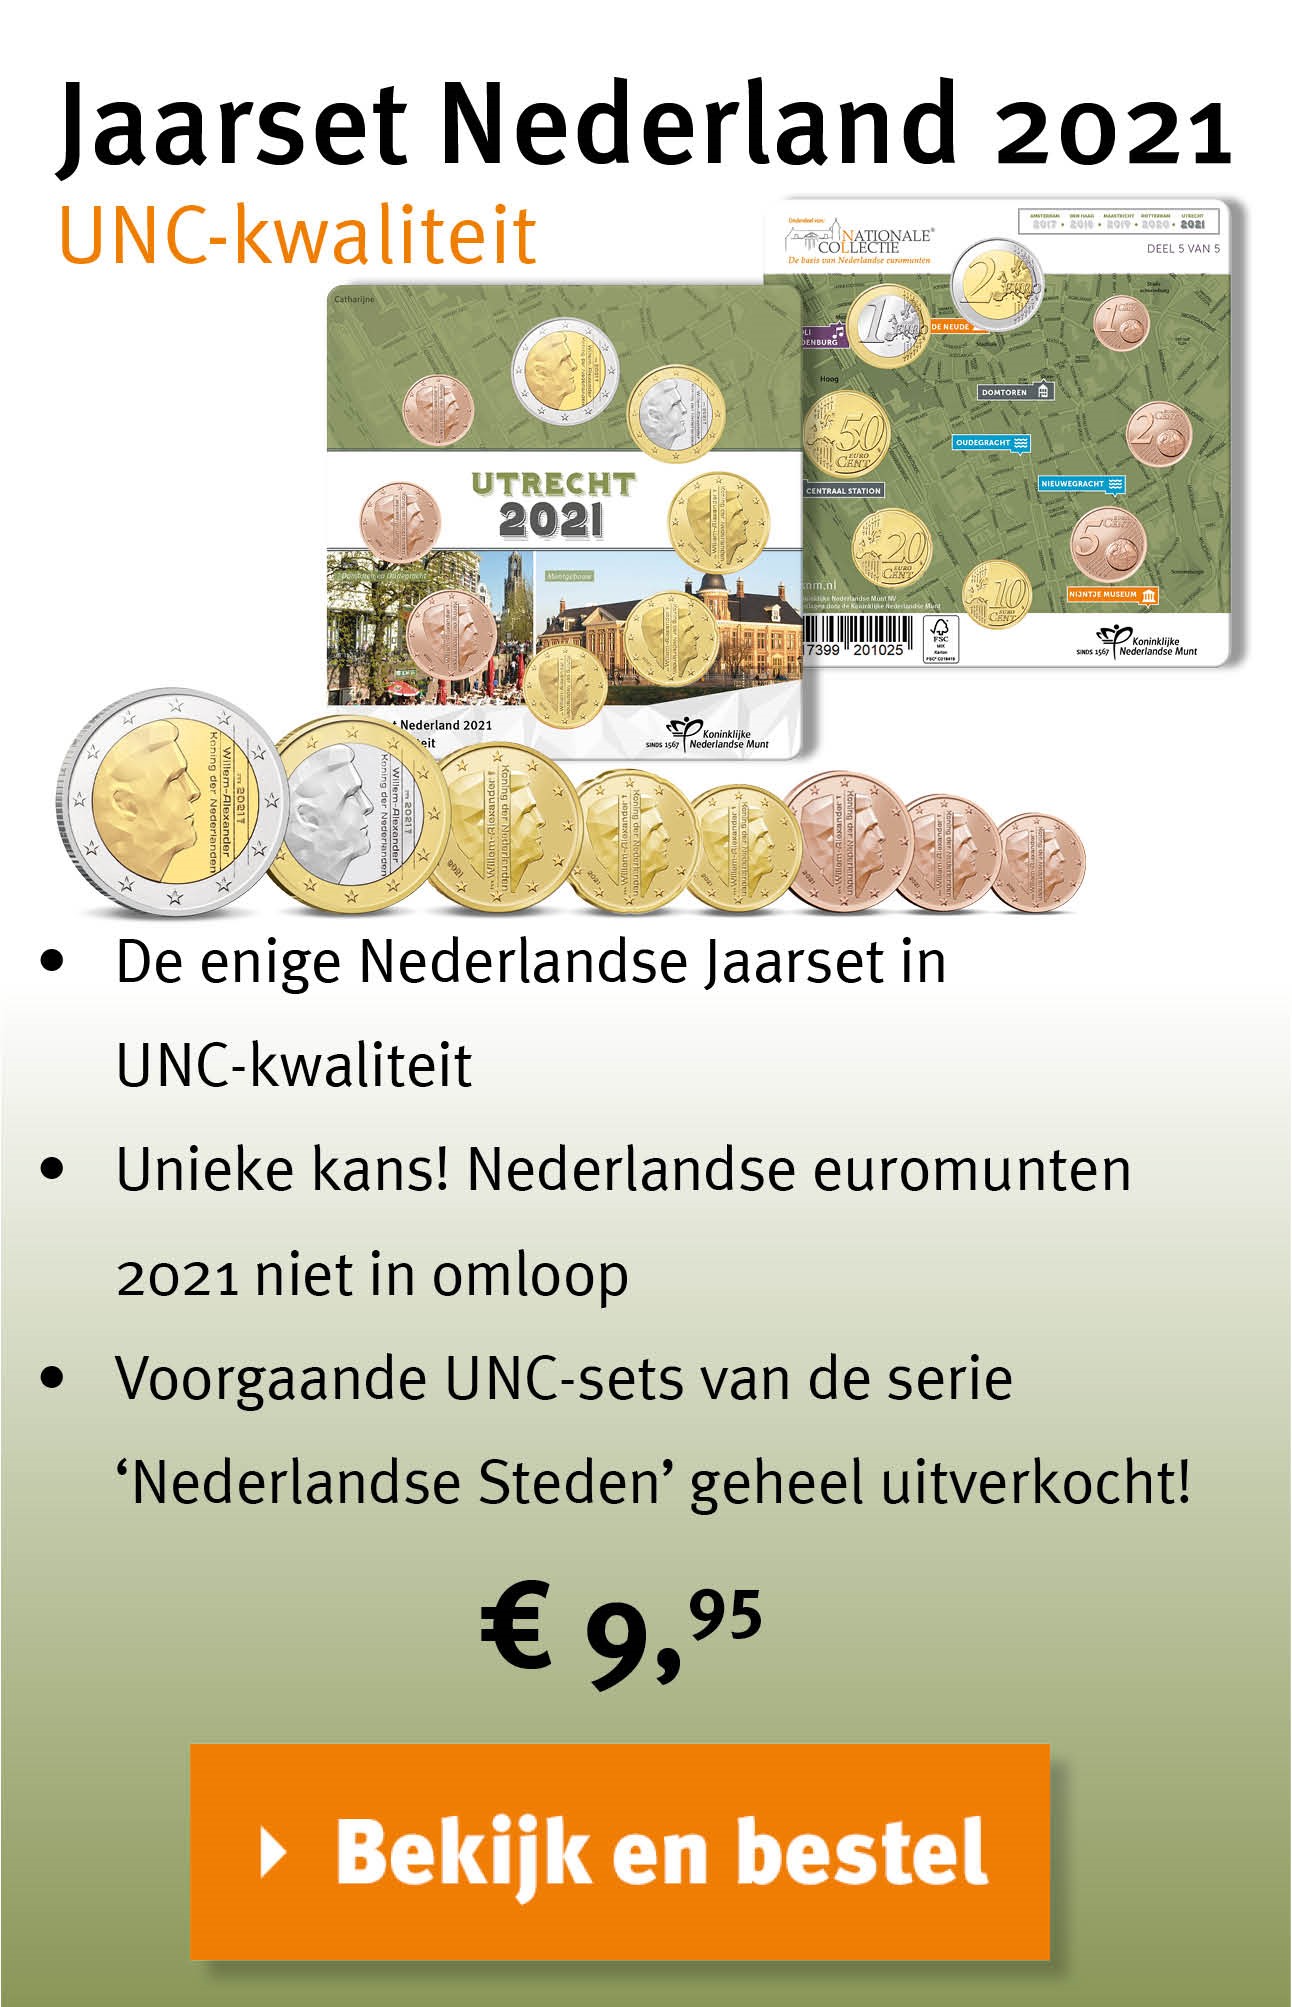 Bekijk en bestel: Jaarset Nederland 2021 UNC-kwaliteit